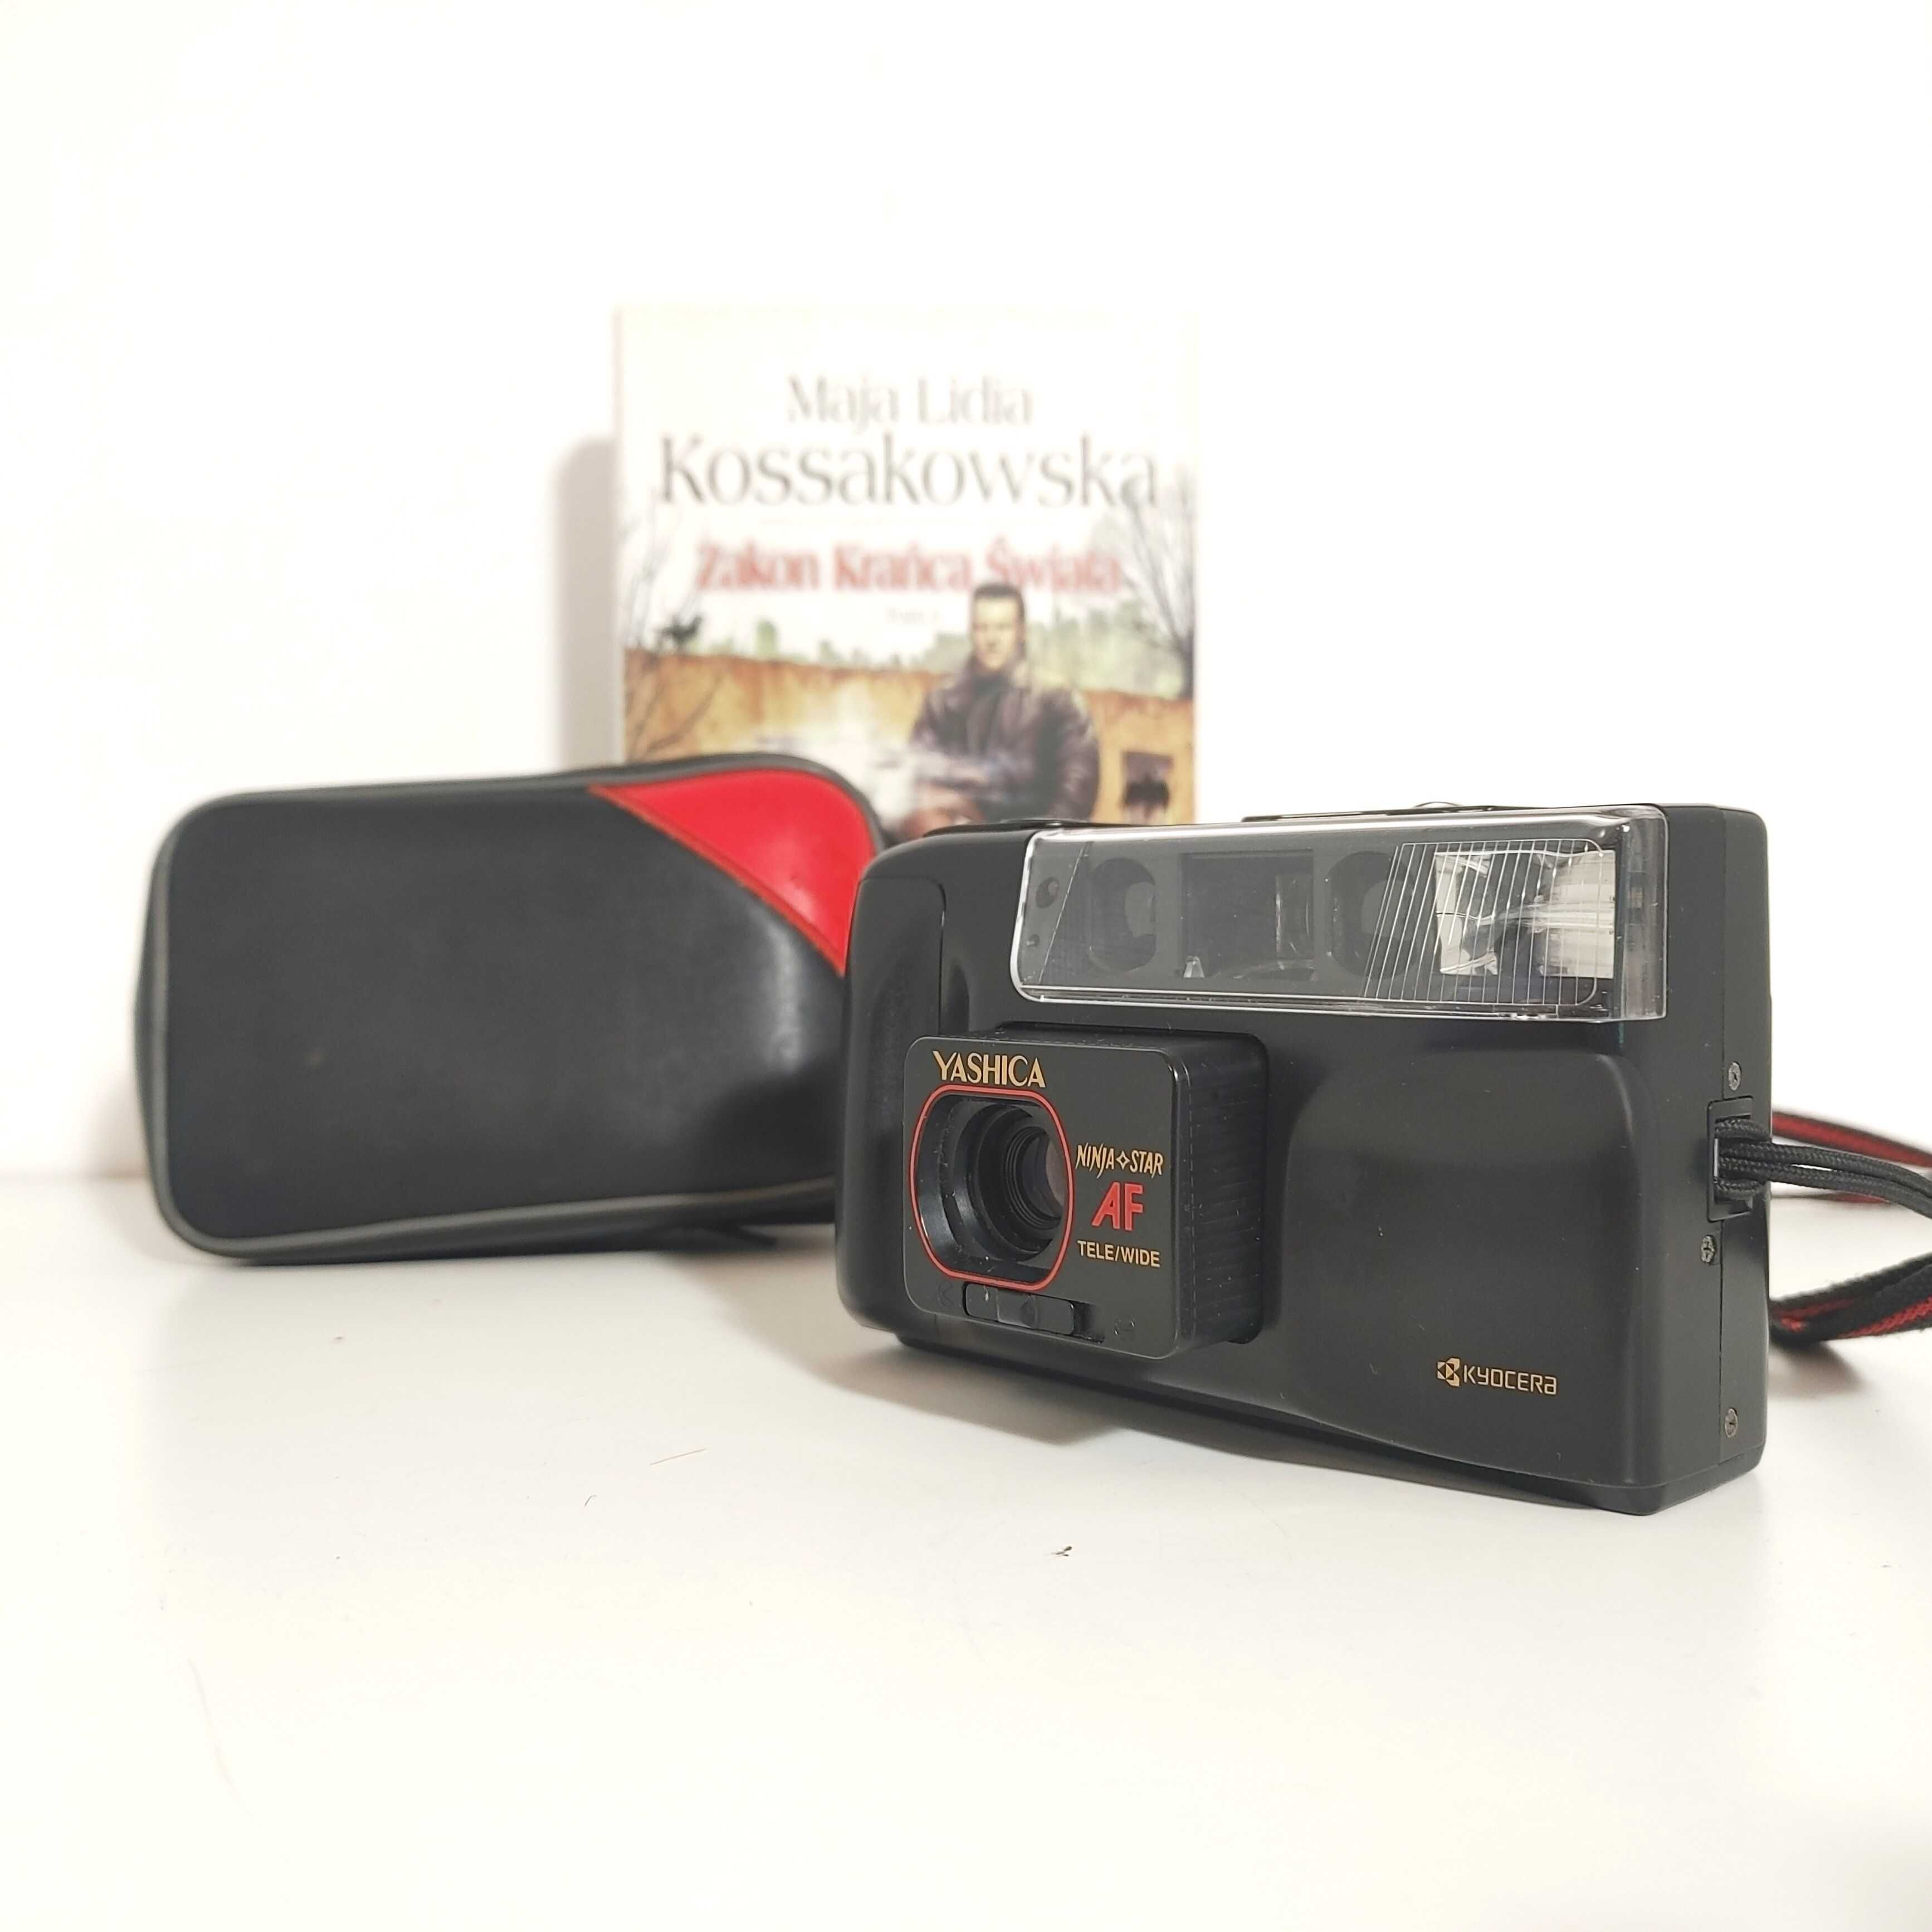 Niezawodna Yashica DF 100 AF Kompaktowy aparat fotograficzny analog